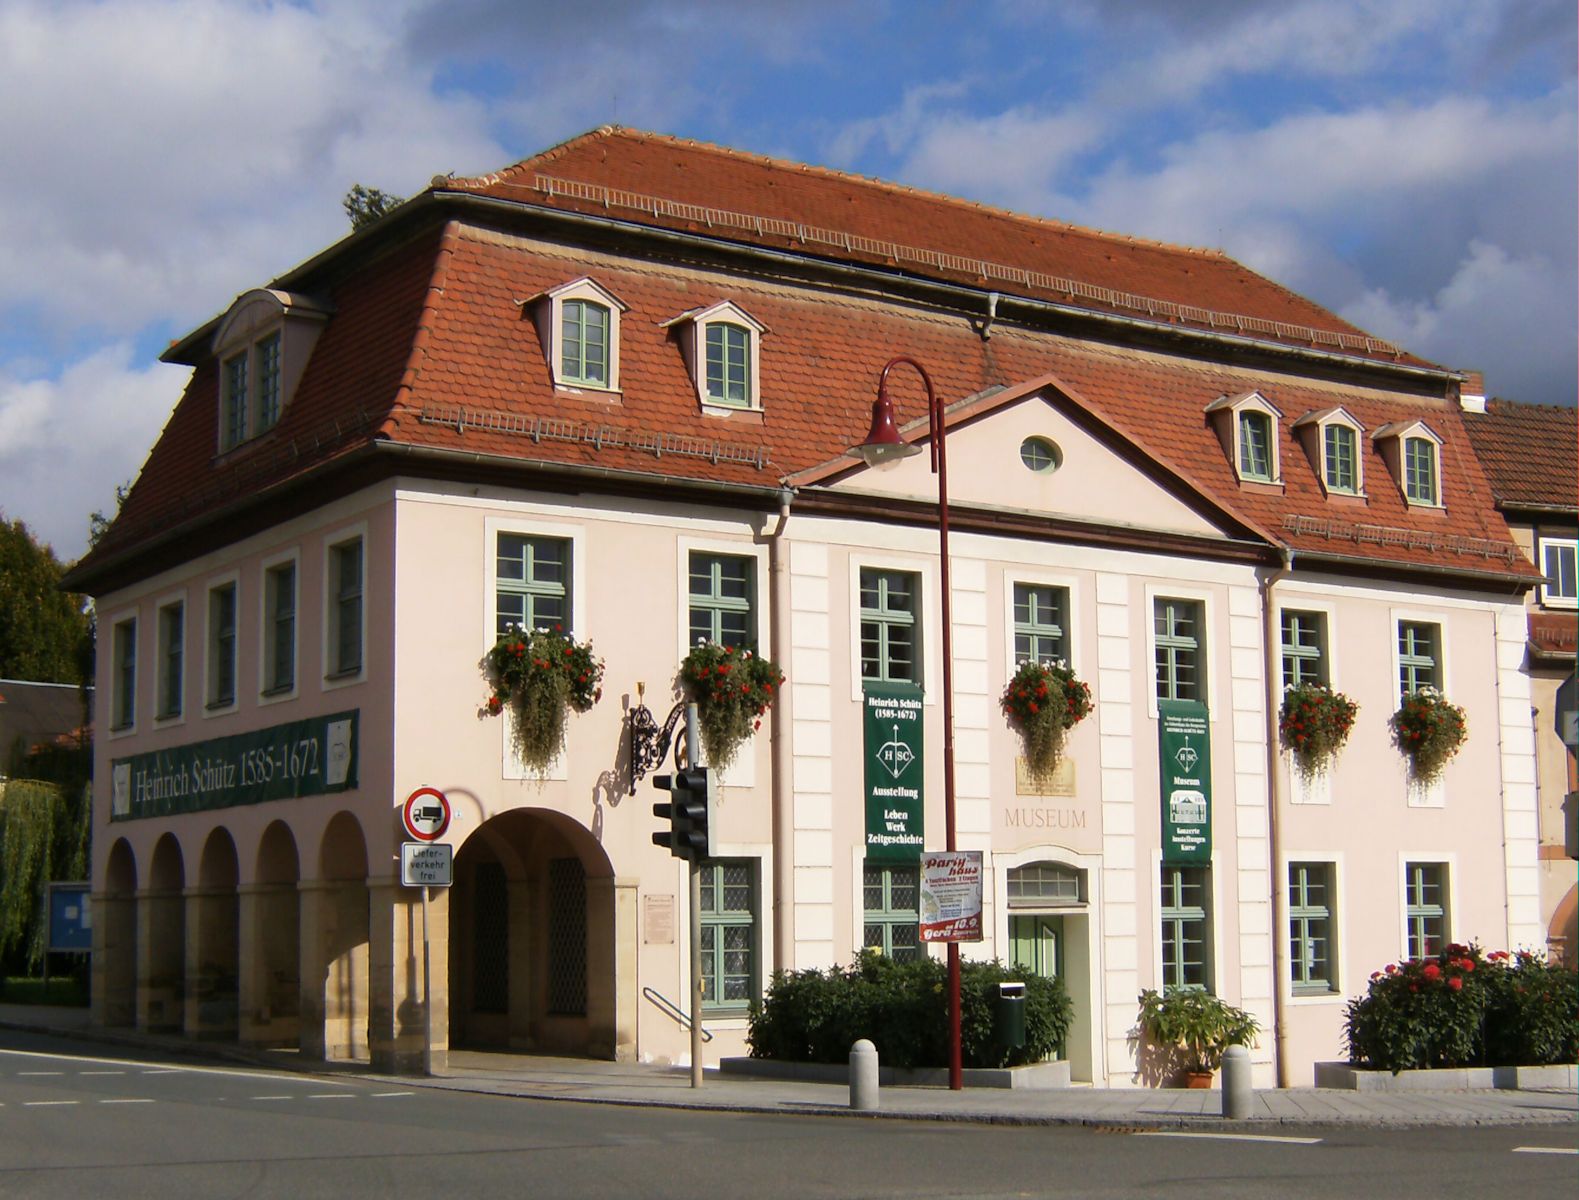 Heinrich-Schütz-Haus in Bad Köstritz